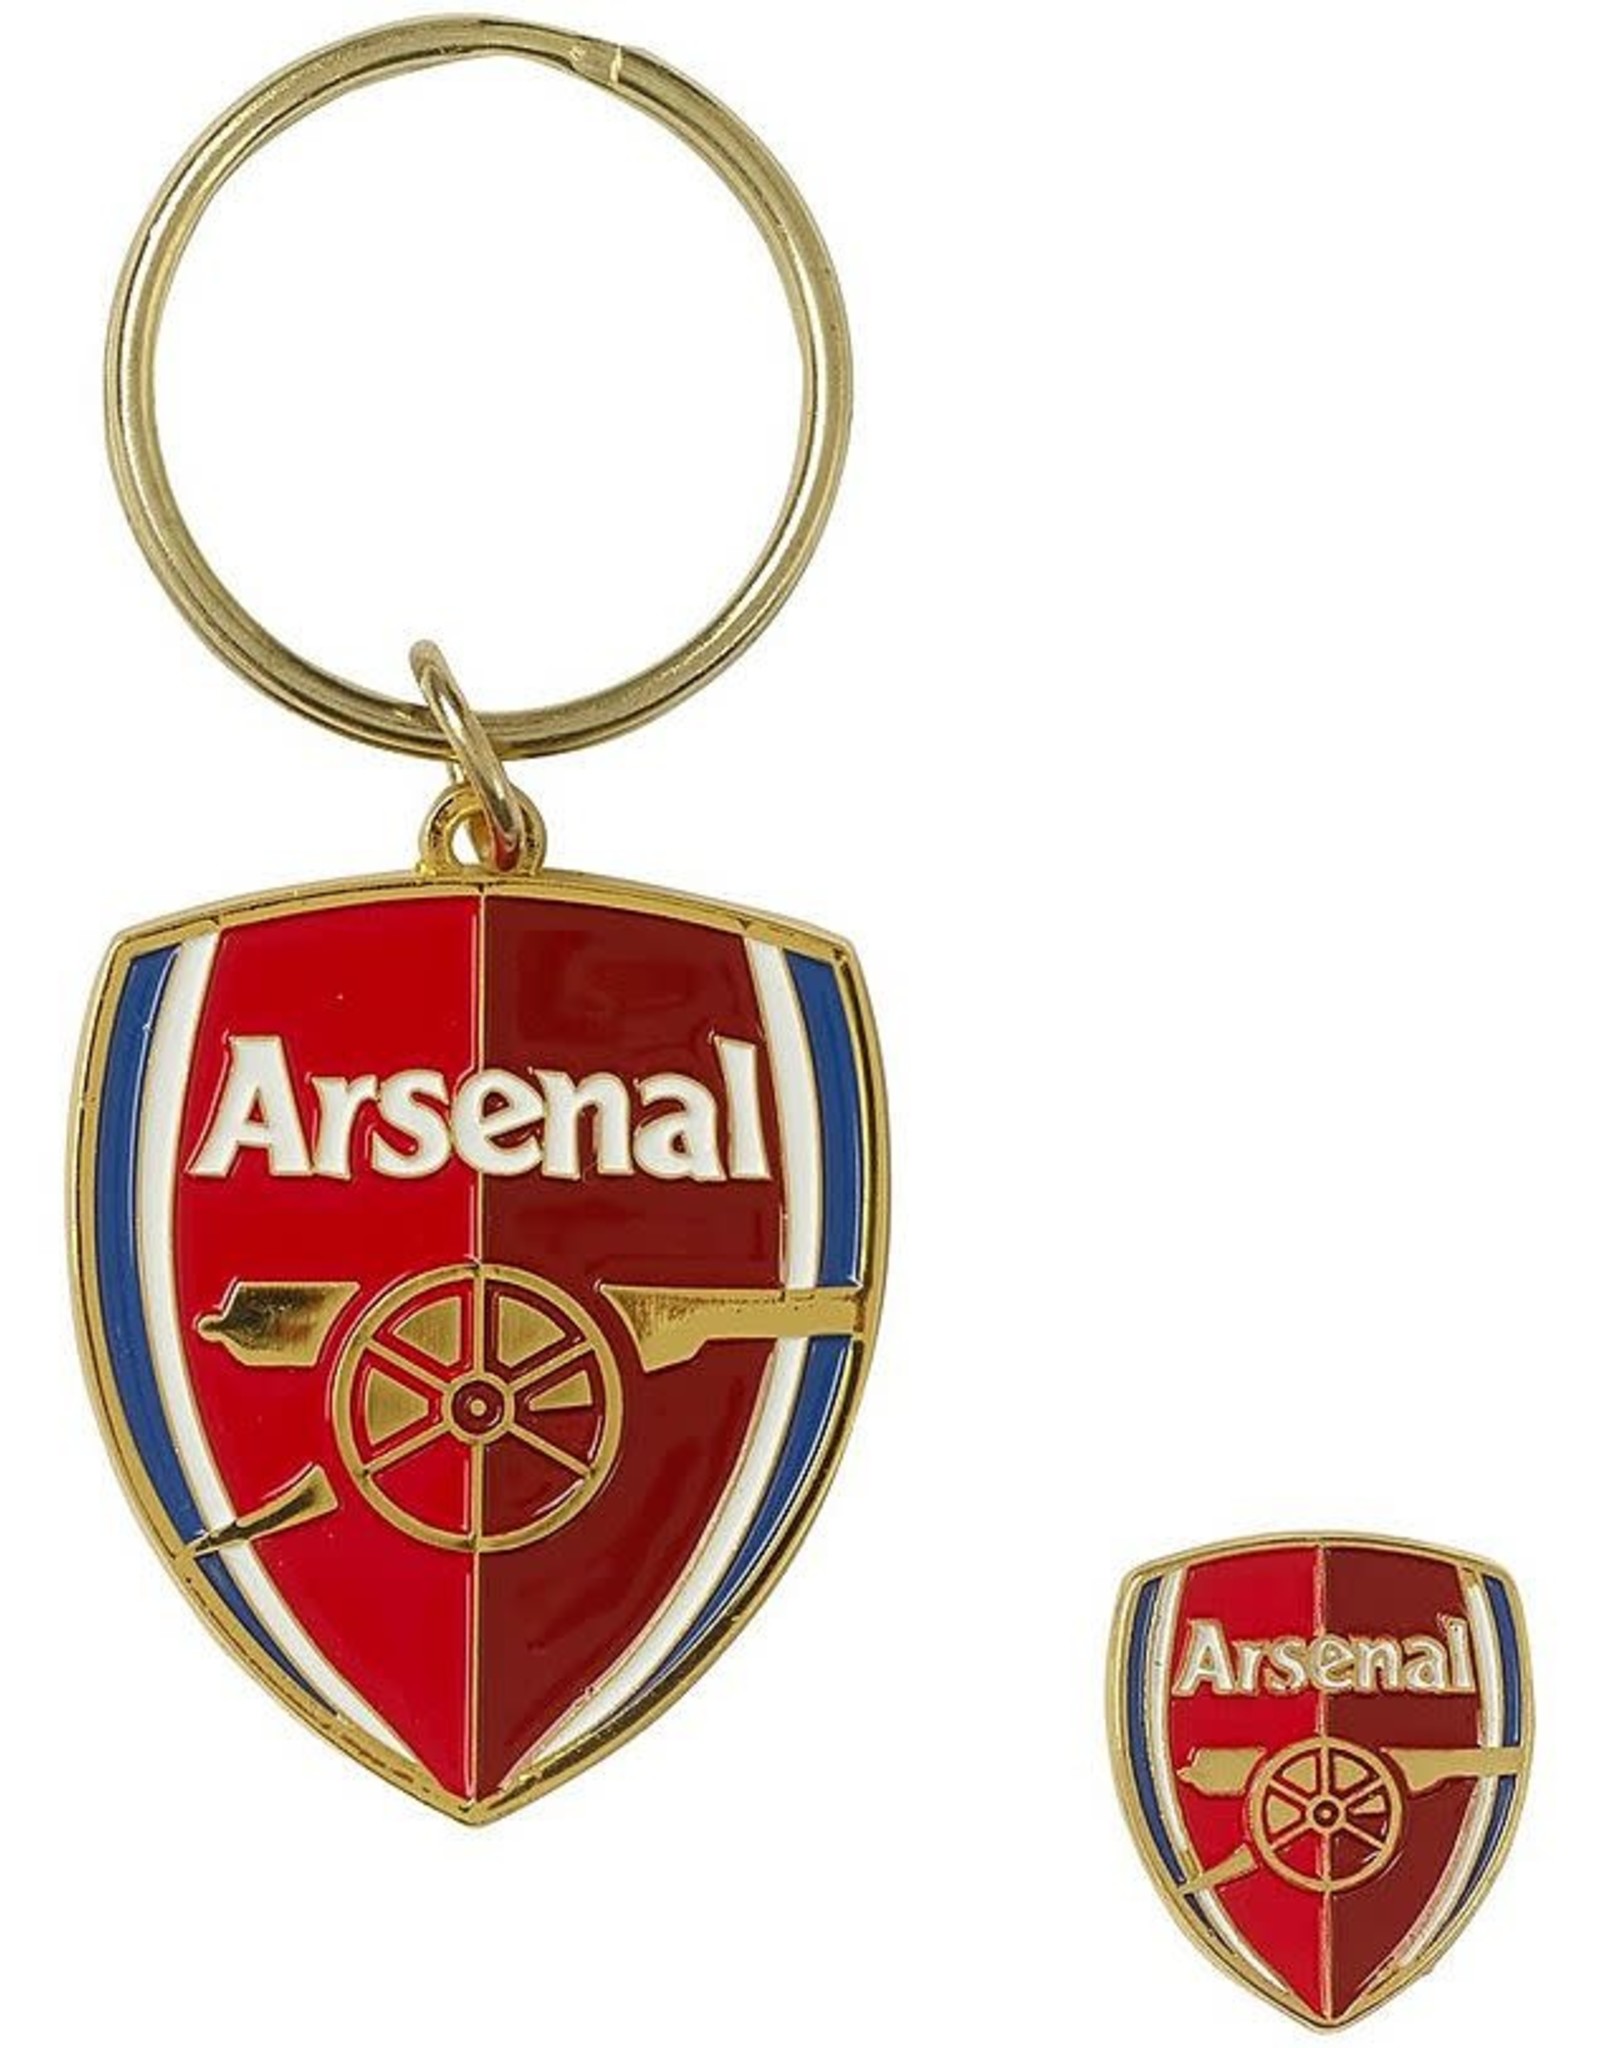 Arsenal Key Ring